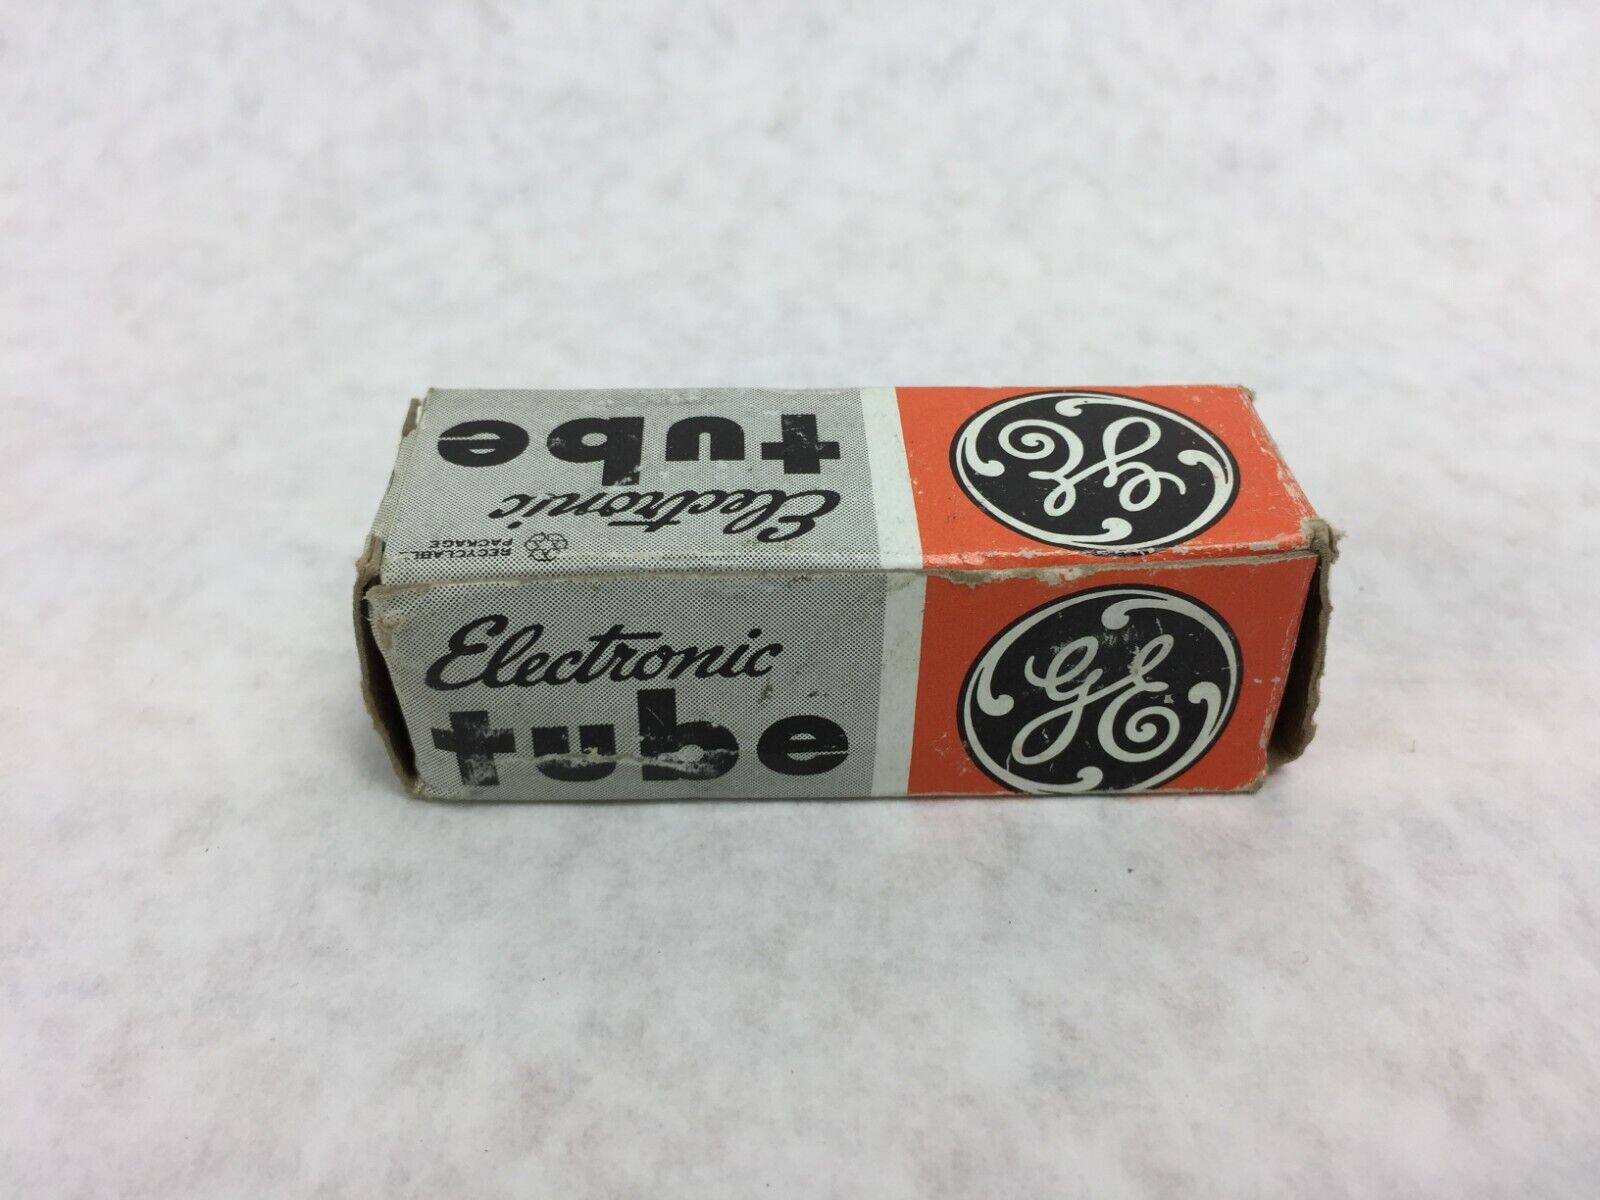 GE Electronic Tube 6GJ7 / ECF801